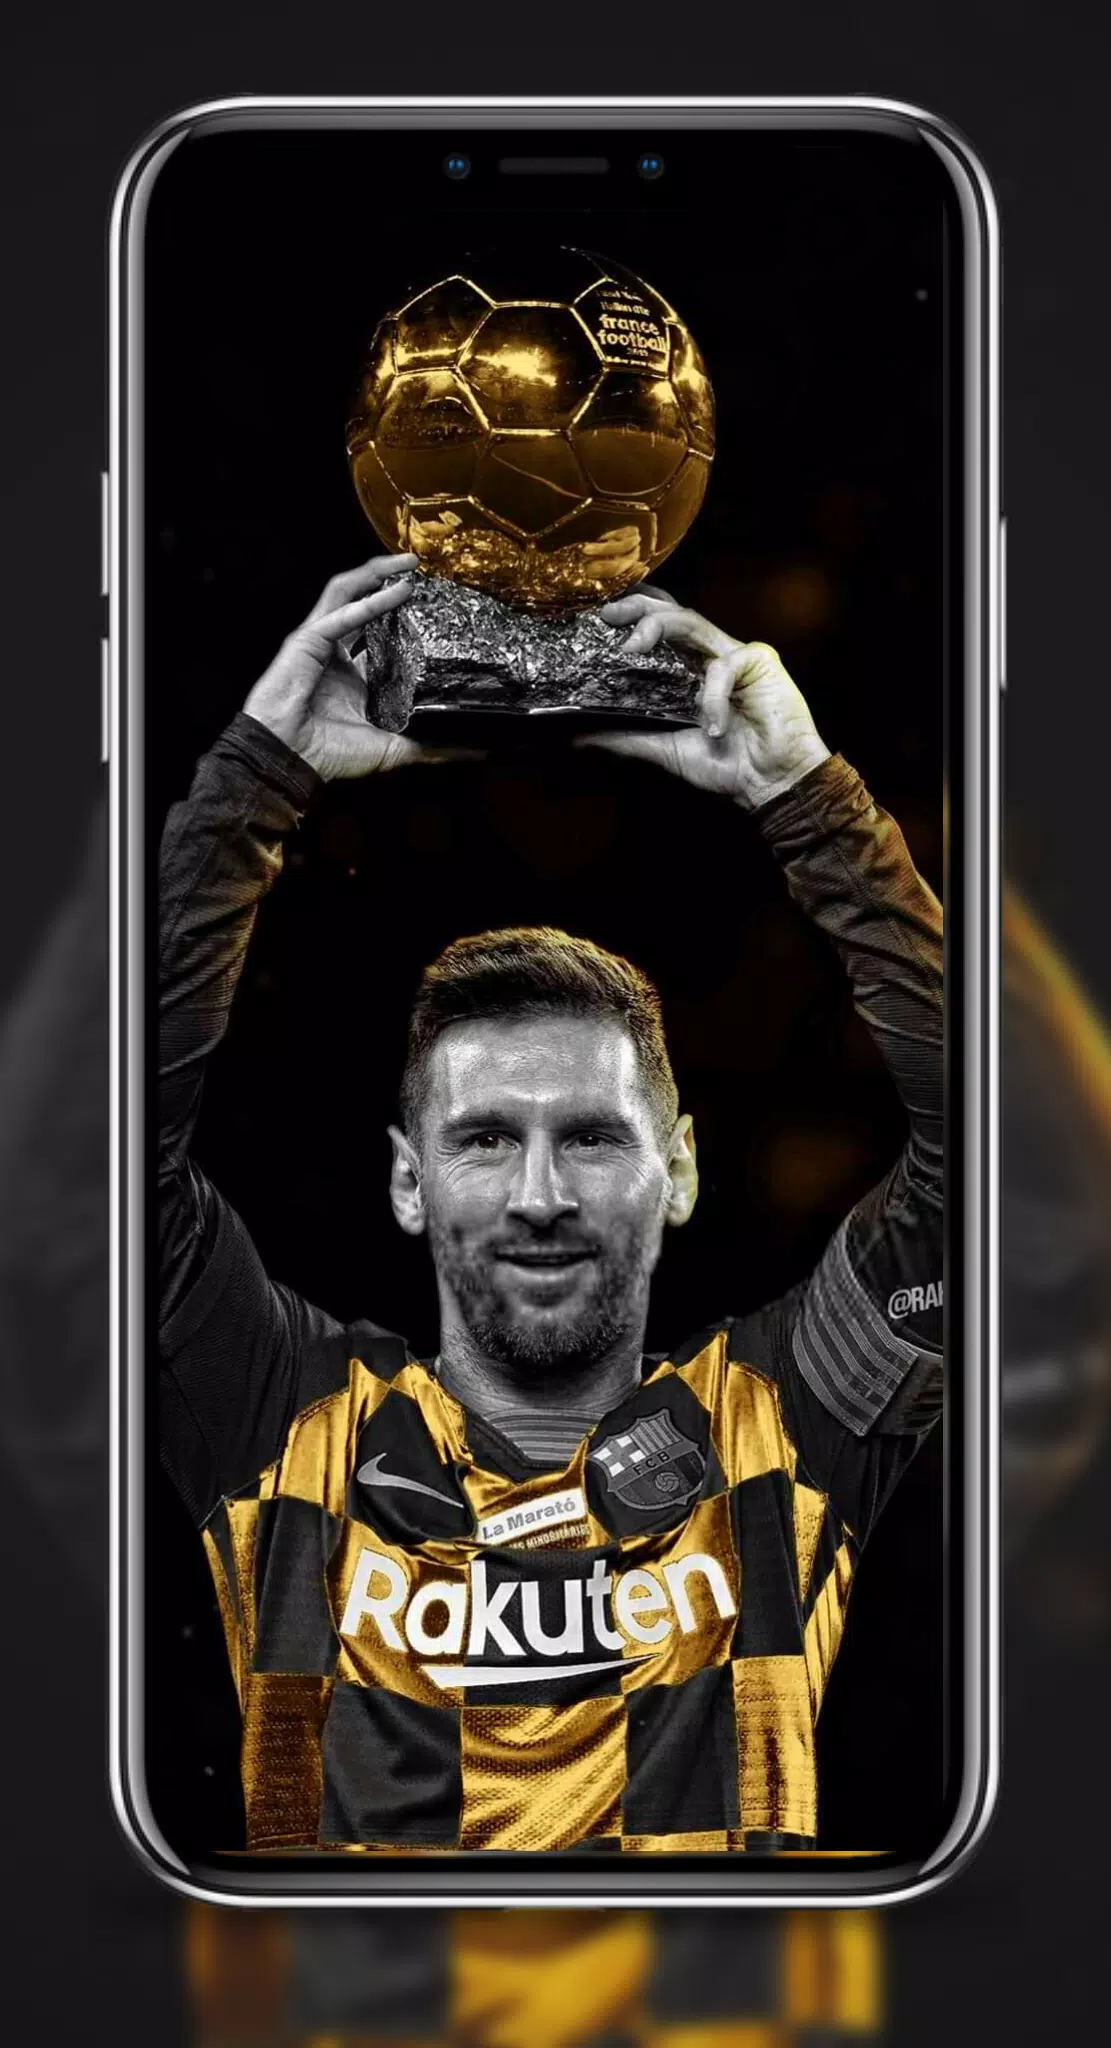 Nếu bạn muốn có một bộ sưu tập hình nền riêng về Messi trên điện thoại Android của mình, thì hãy tải ứng dụng Lionel Messi Wallpapers 2024 APK. Với hàng trăm bức hình đẹp mắt, độ phân giải cao và được chỉnh sửa tỉ mỉ, bạn sẽ luôn cảm thấy hài lòng khi dùng ứng dụng này.